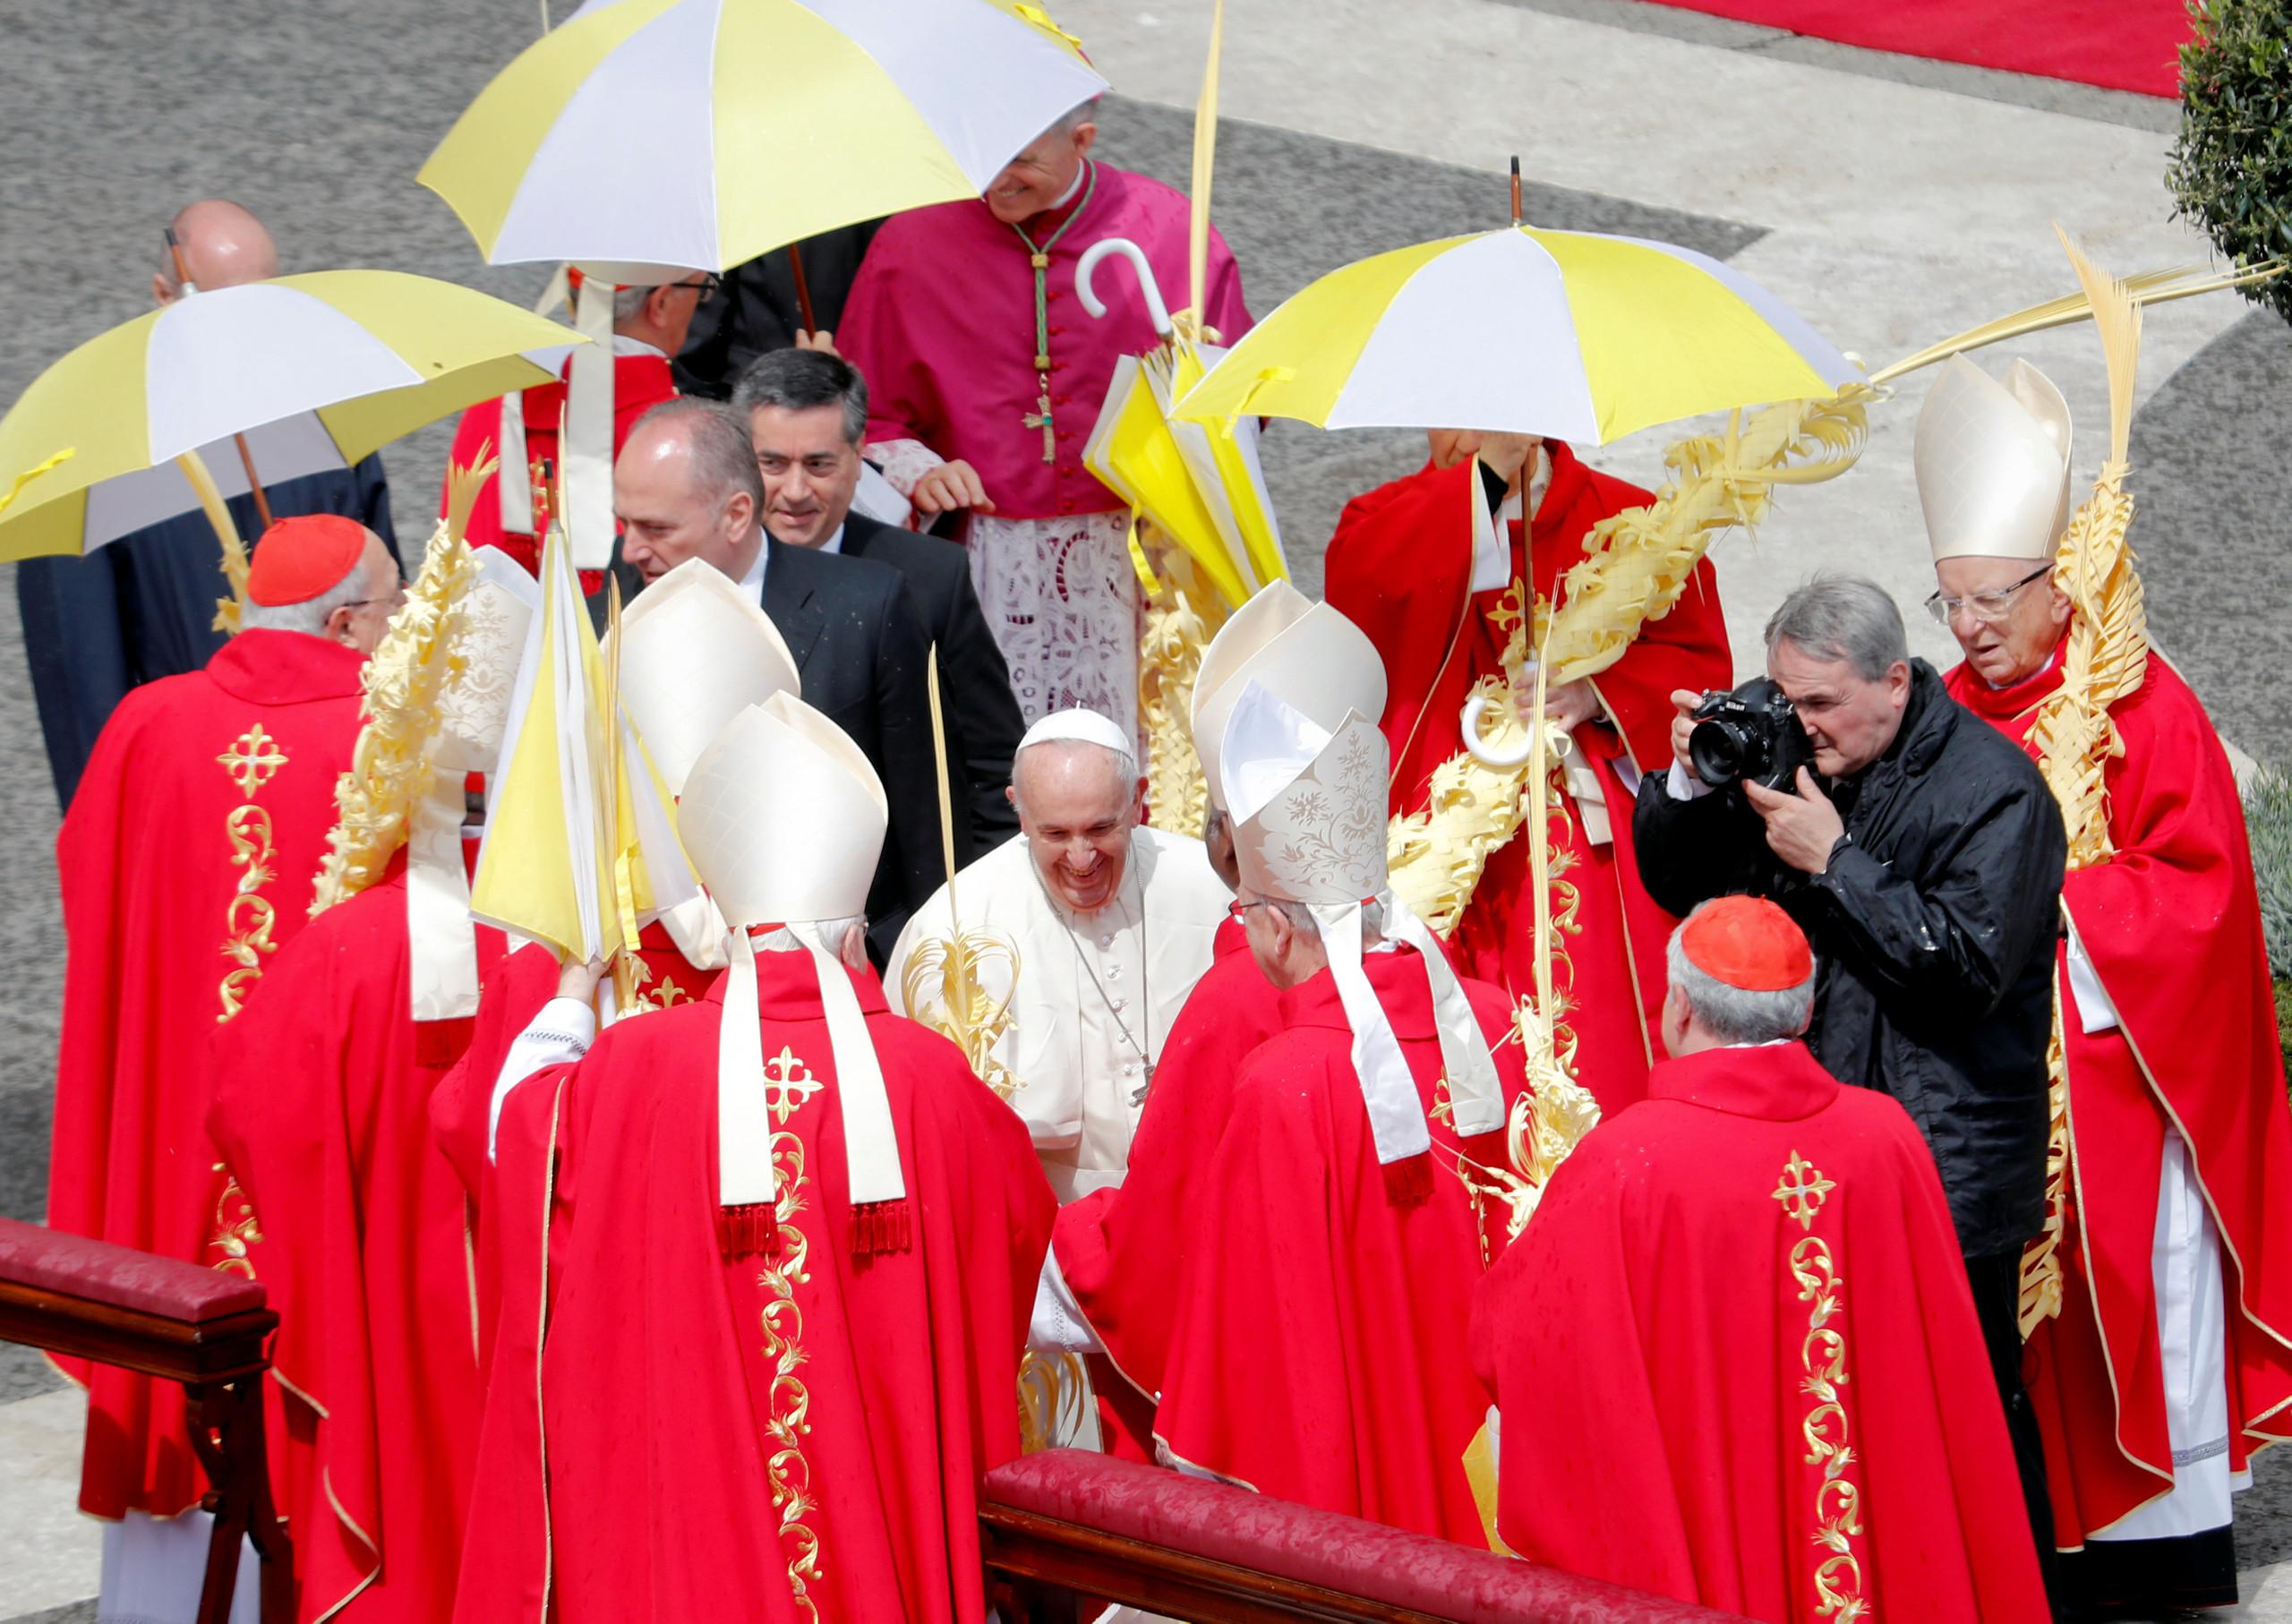 في أحد السعف .. البابا يحذر من أكبر إغراء يهدد الكنيسة